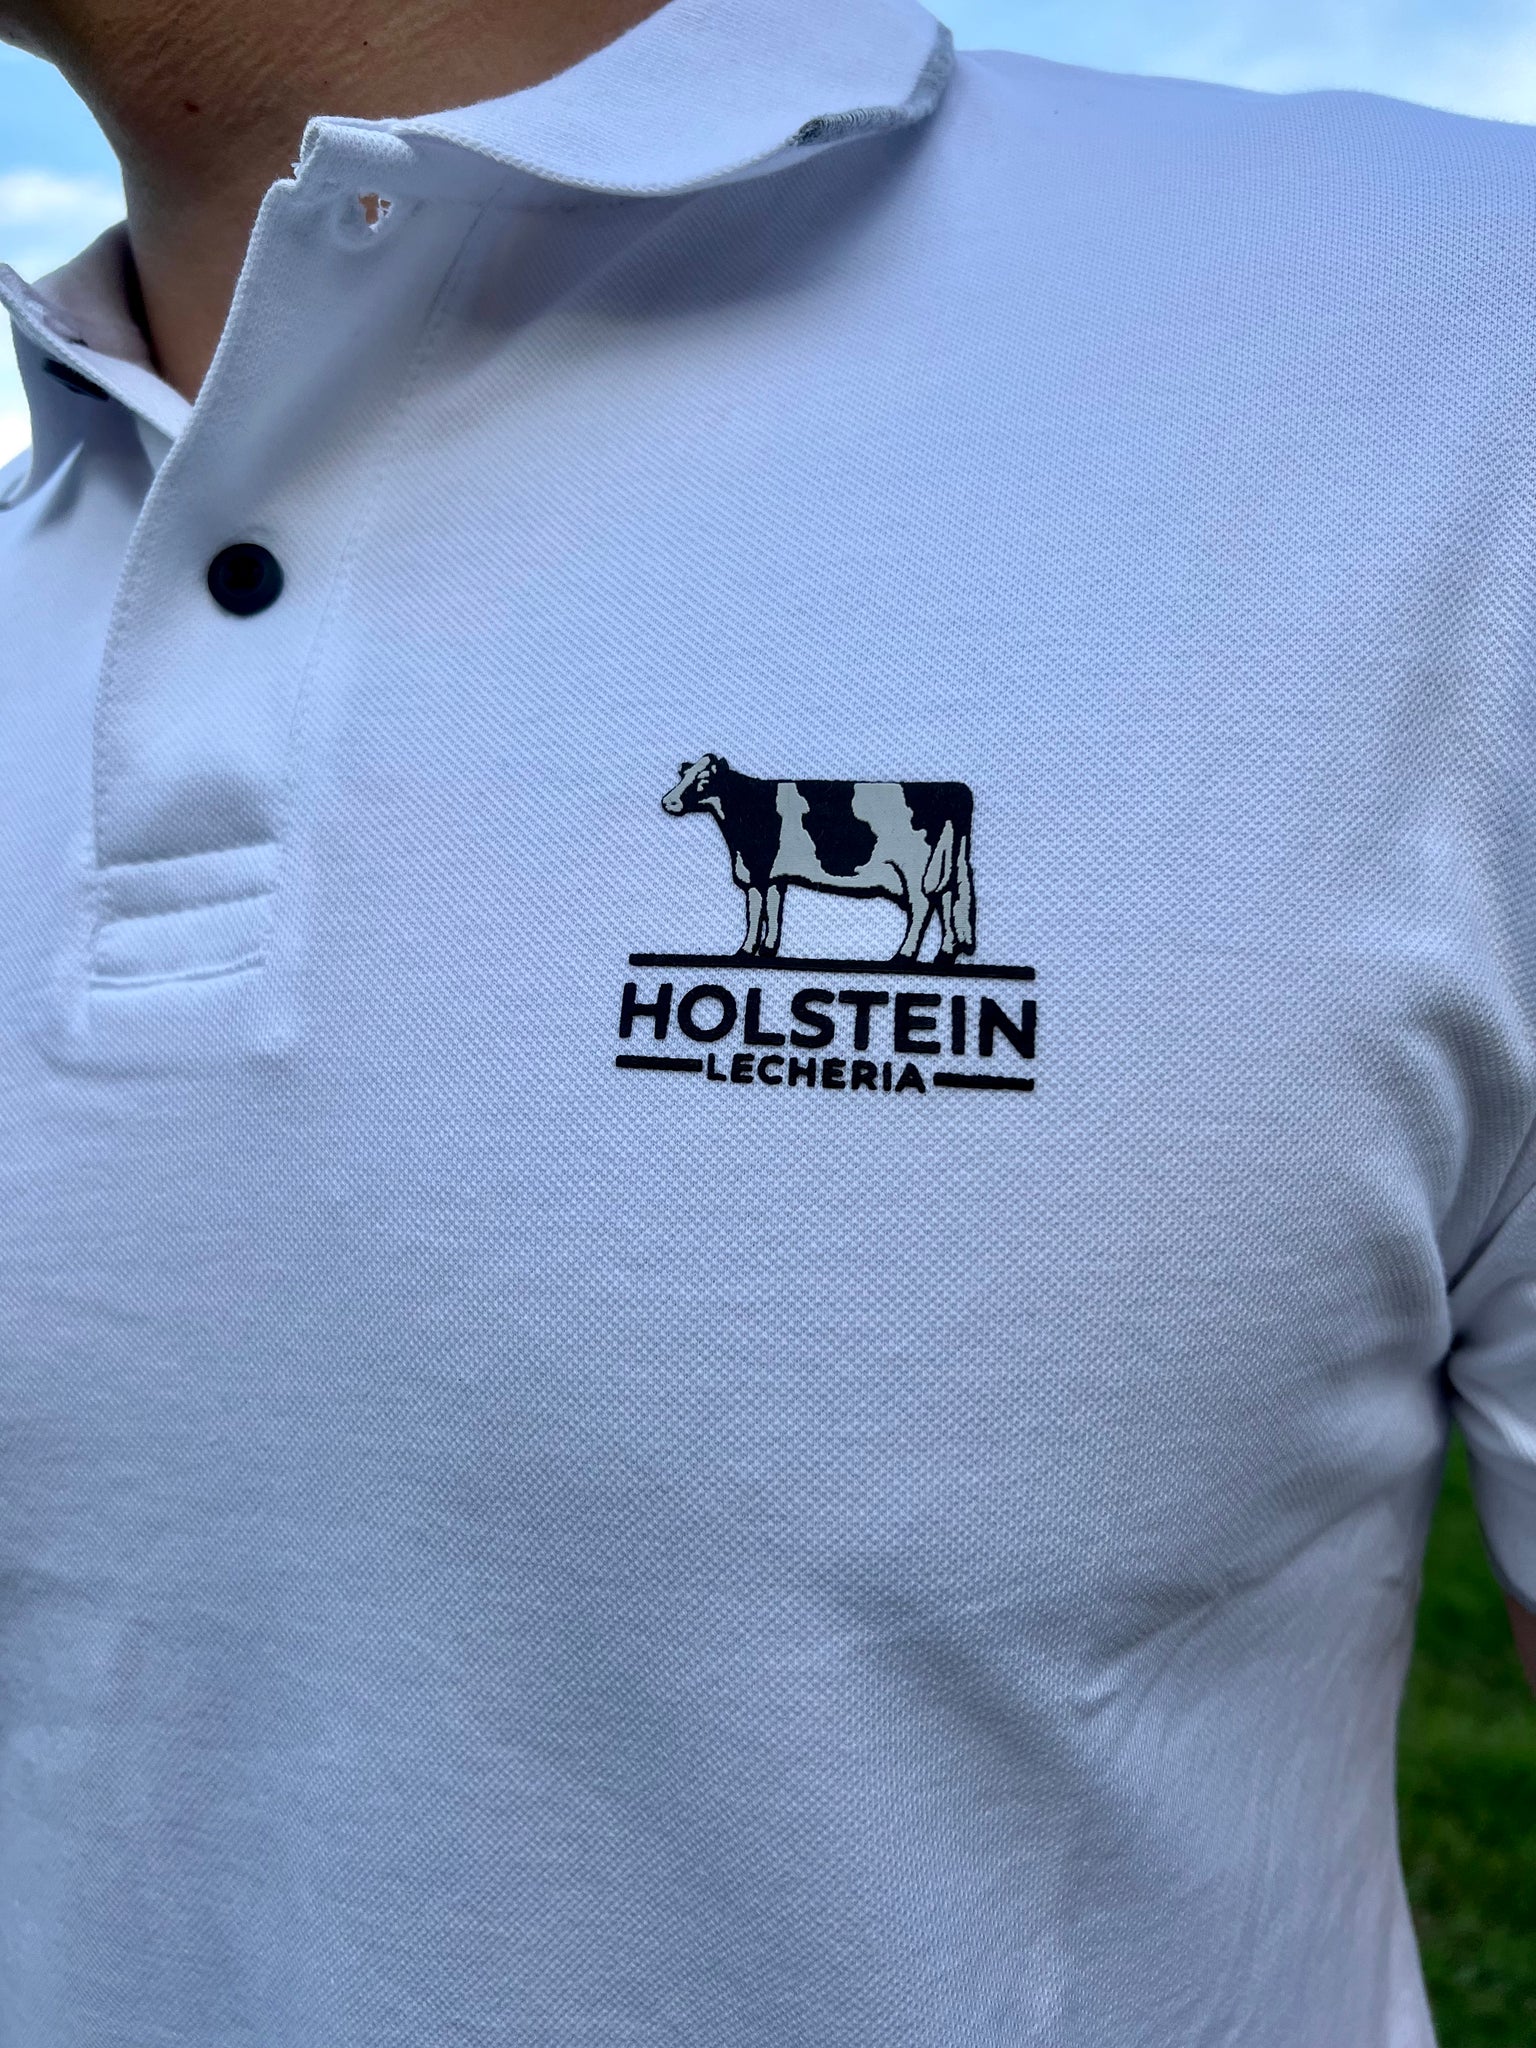 Polo Holstein Lecheria Blanca 0880